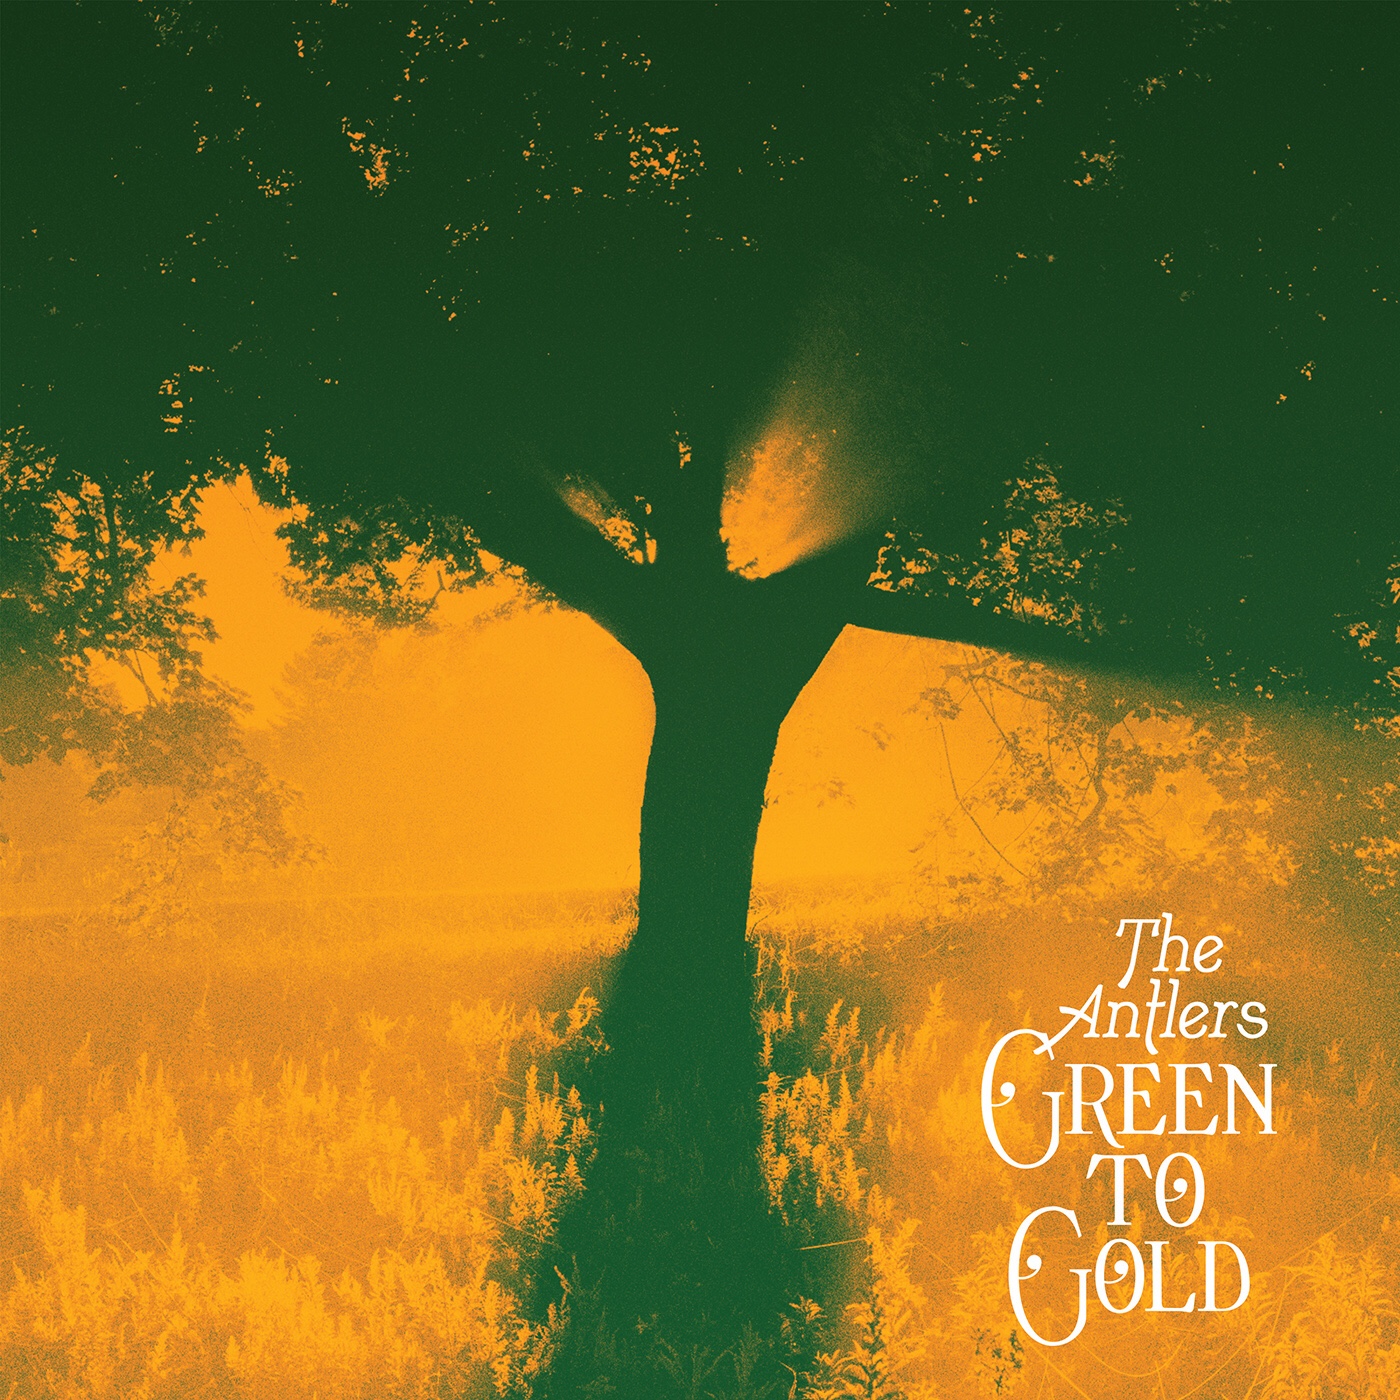 カルト的人気を誇るブルックリンのインディー・ロック・バンド、The Antlersがニュー・アルバム”Green To Gold”を3/26にリリース。